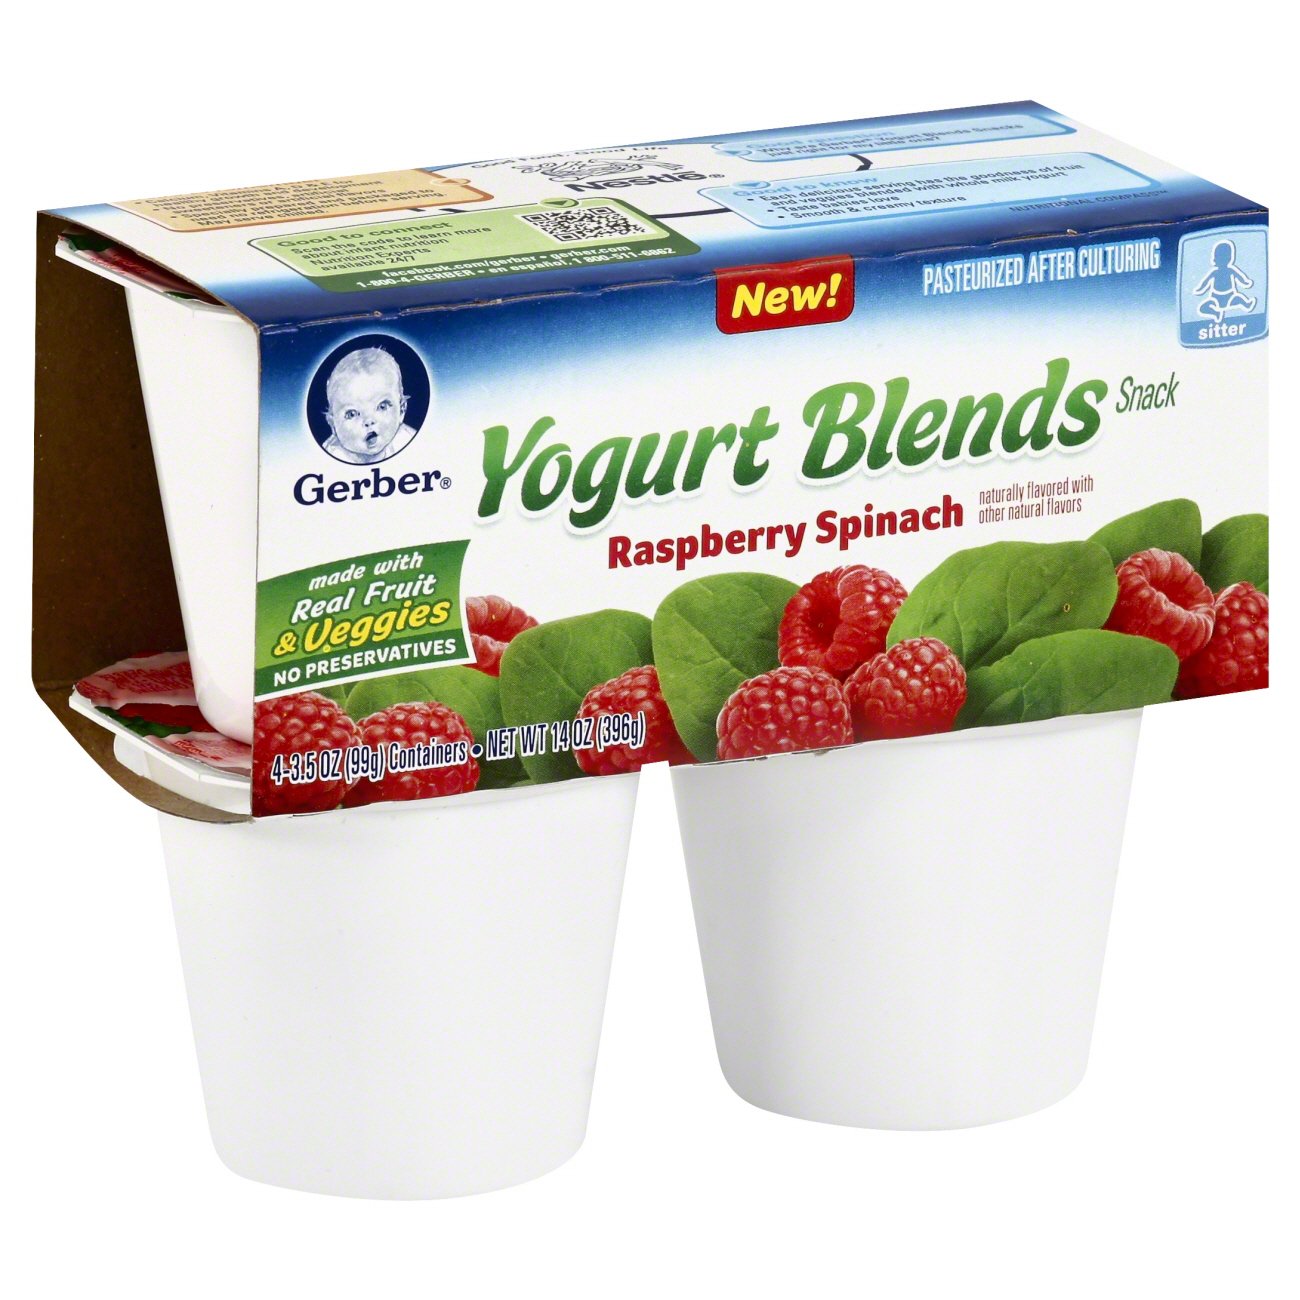 yogurt blends gerber